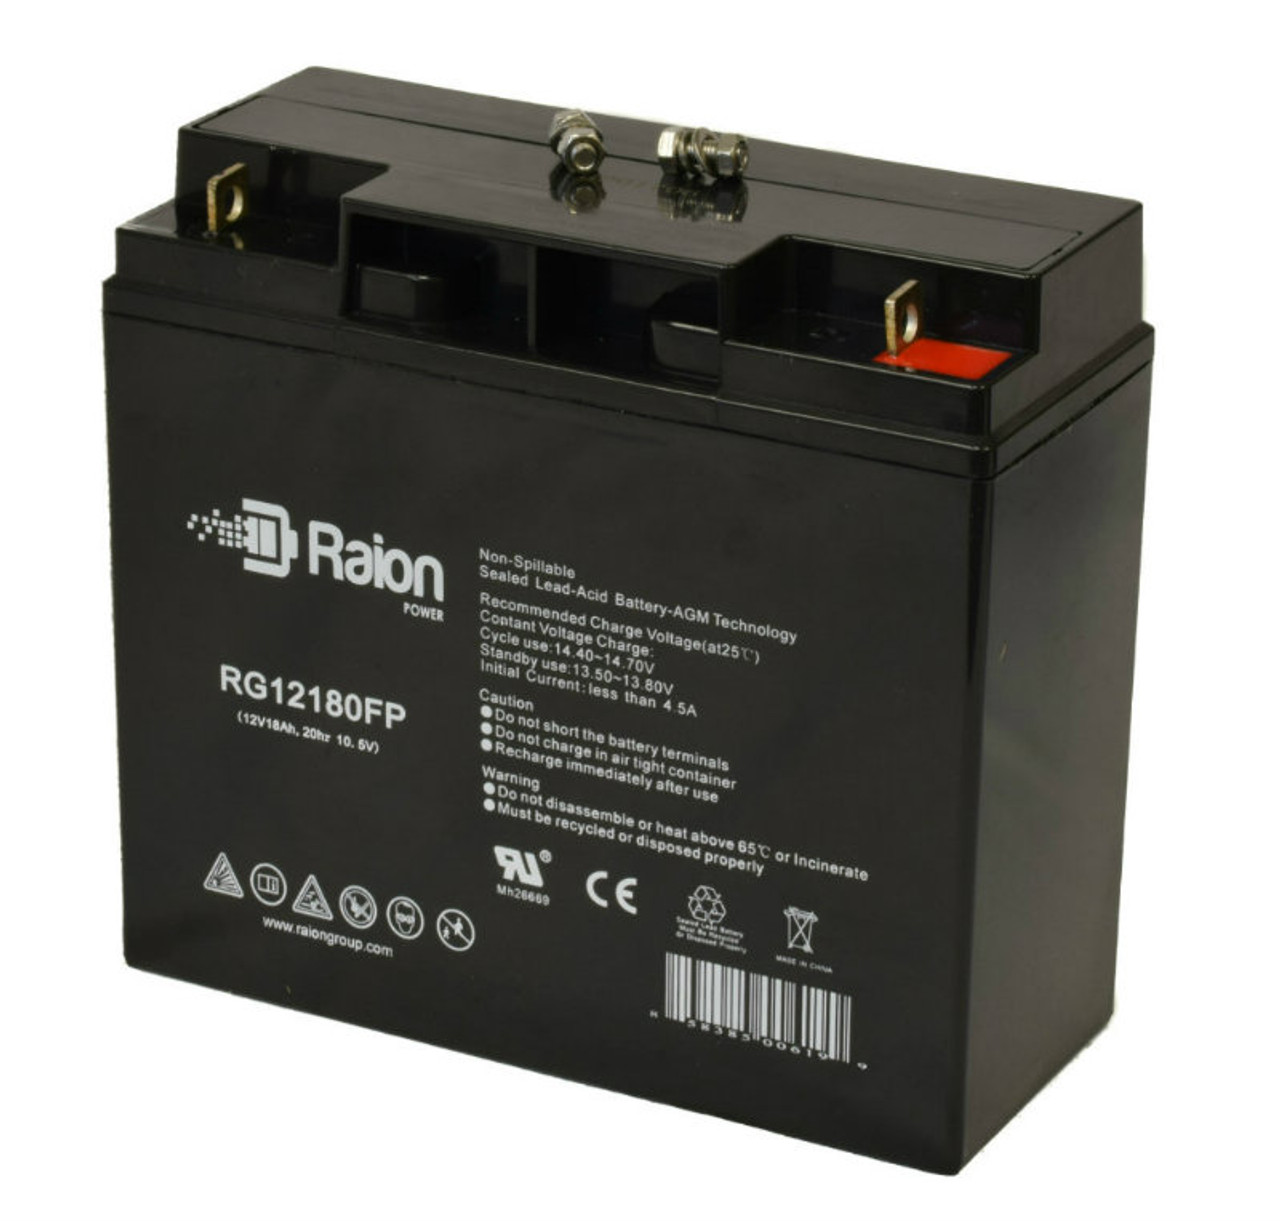 Raion Power Replacement 12V 18Ah Battery for Firman 10000 Watt H08053 Generator - 1 Pack